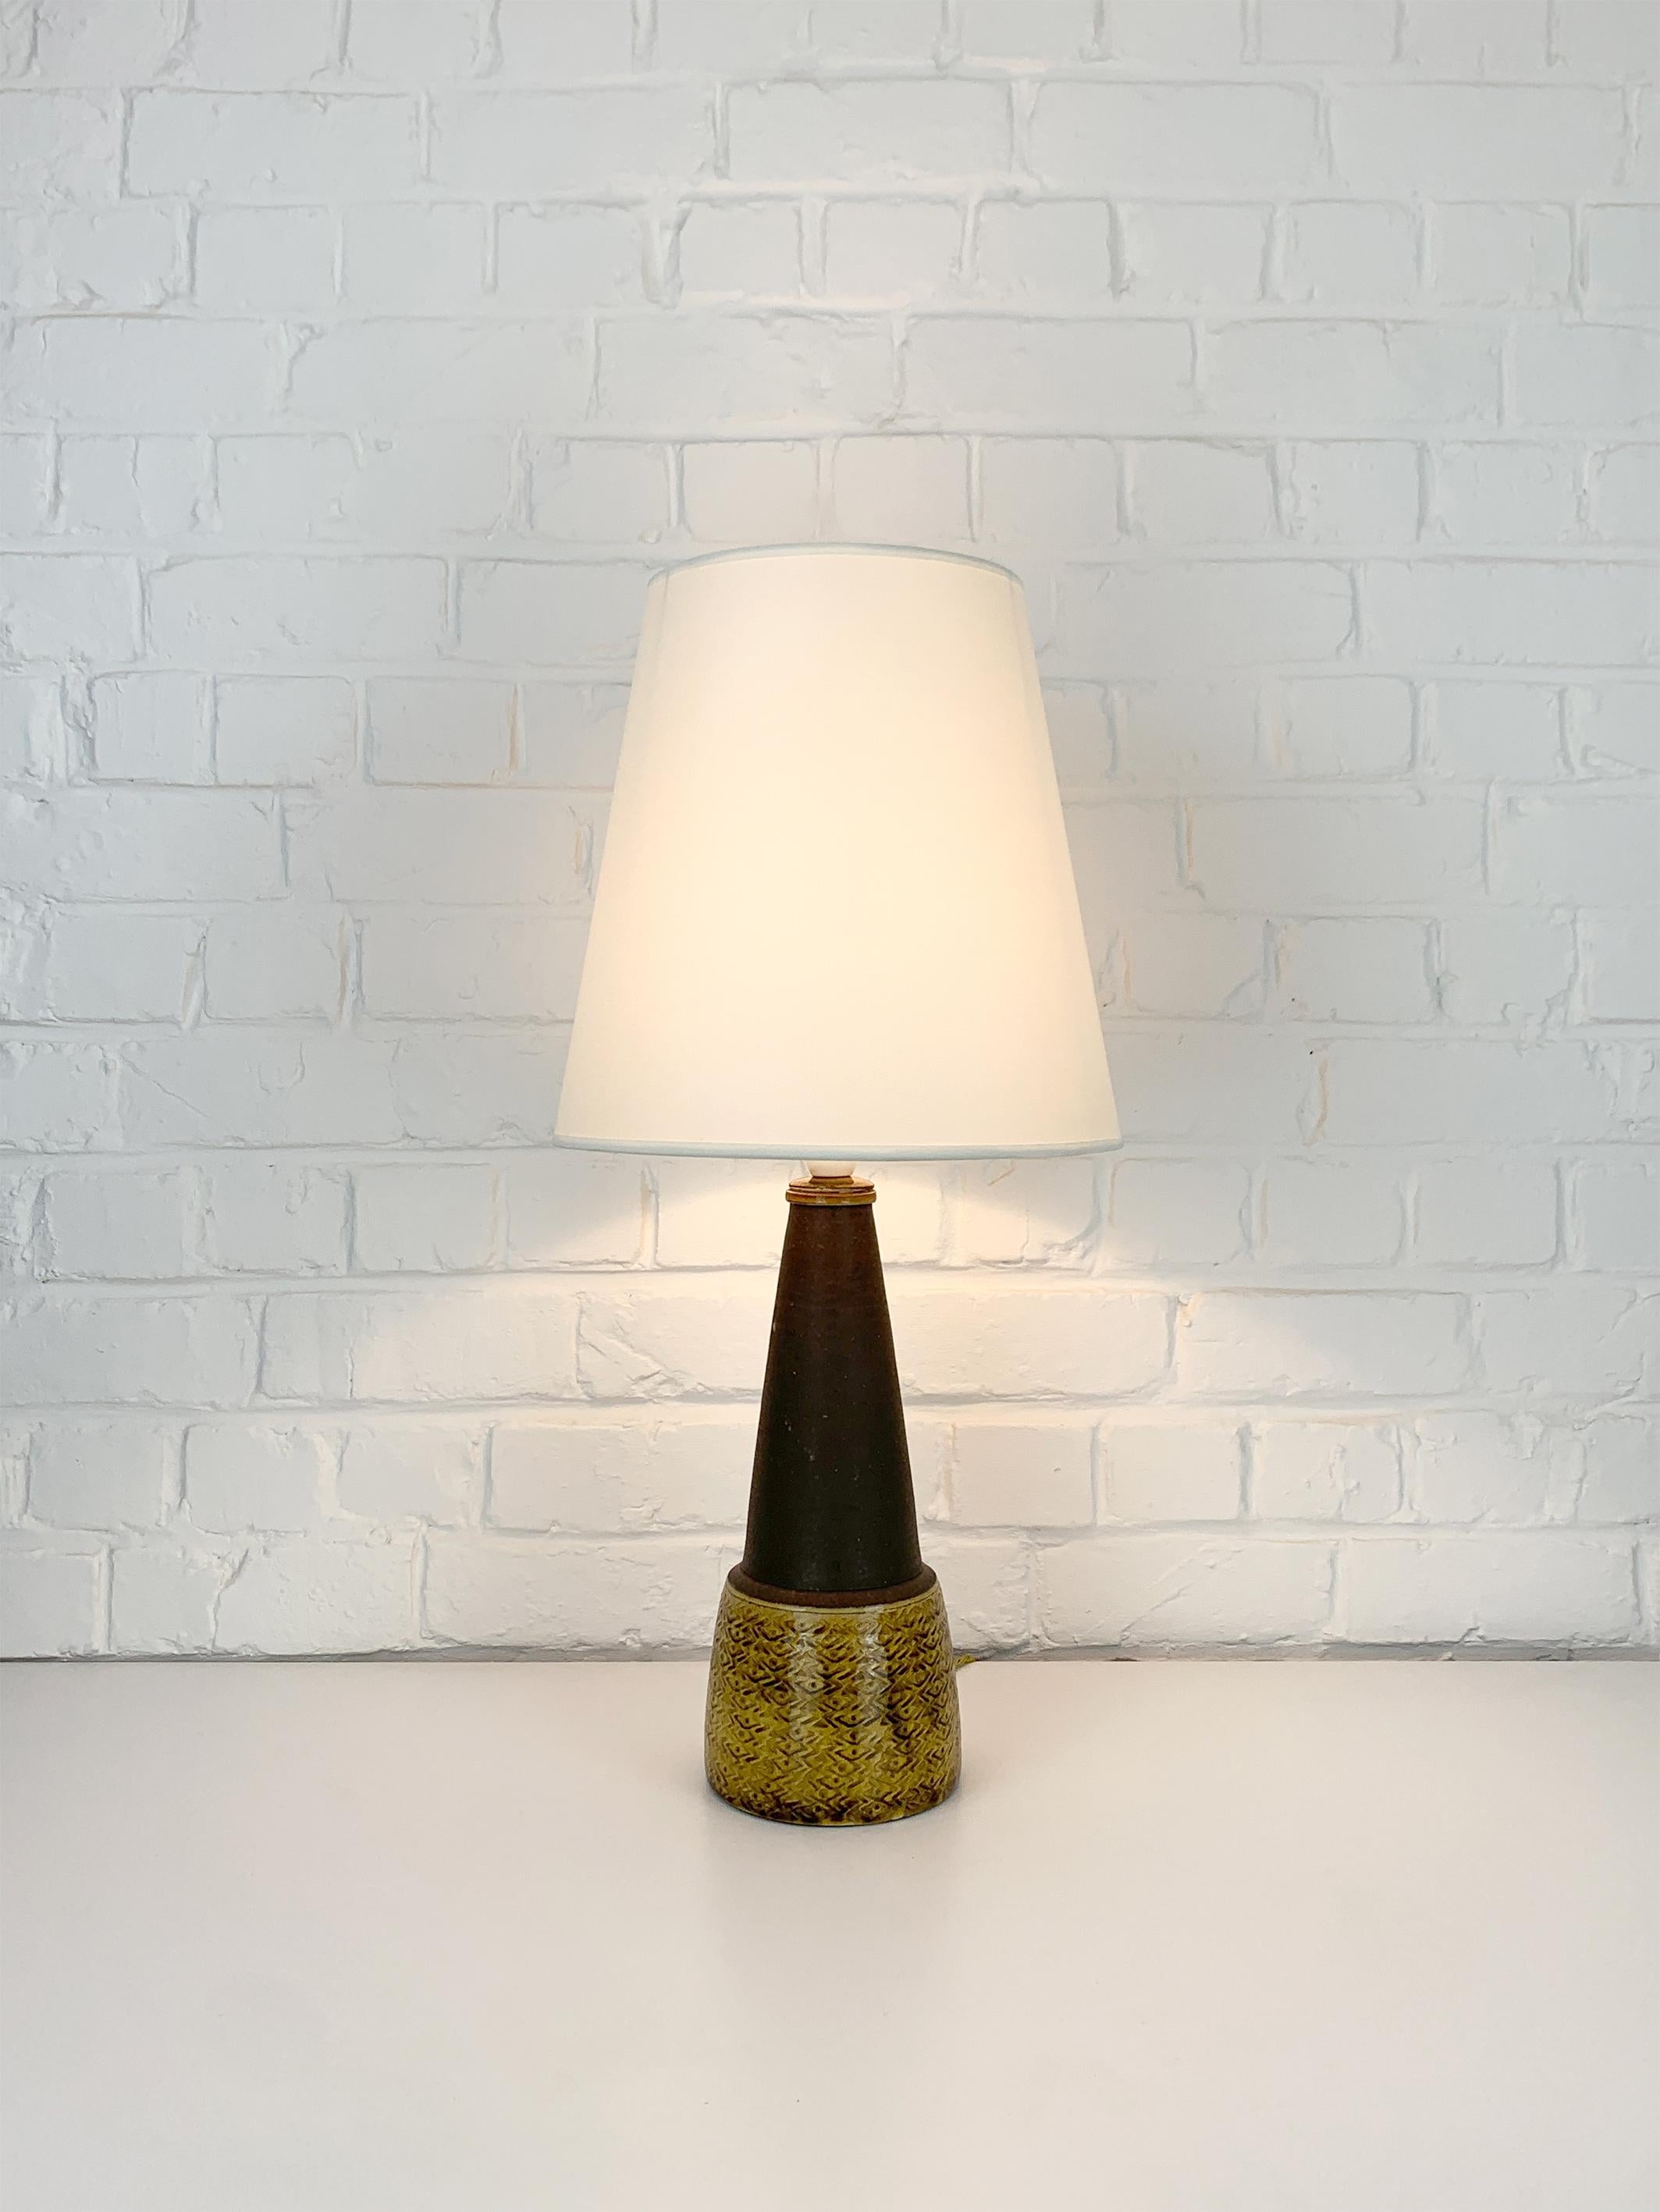 Lampe de table en grès émaillé brun et jaune d'uranium, conçue par Nils Kähler dans les années 1960. Fabriqué par l'atelier de Herman A. Kähler Ceramic (HAK) dans la ville de Townesved au sud du Danemark.
Nils Kähler était la quatrième génération de